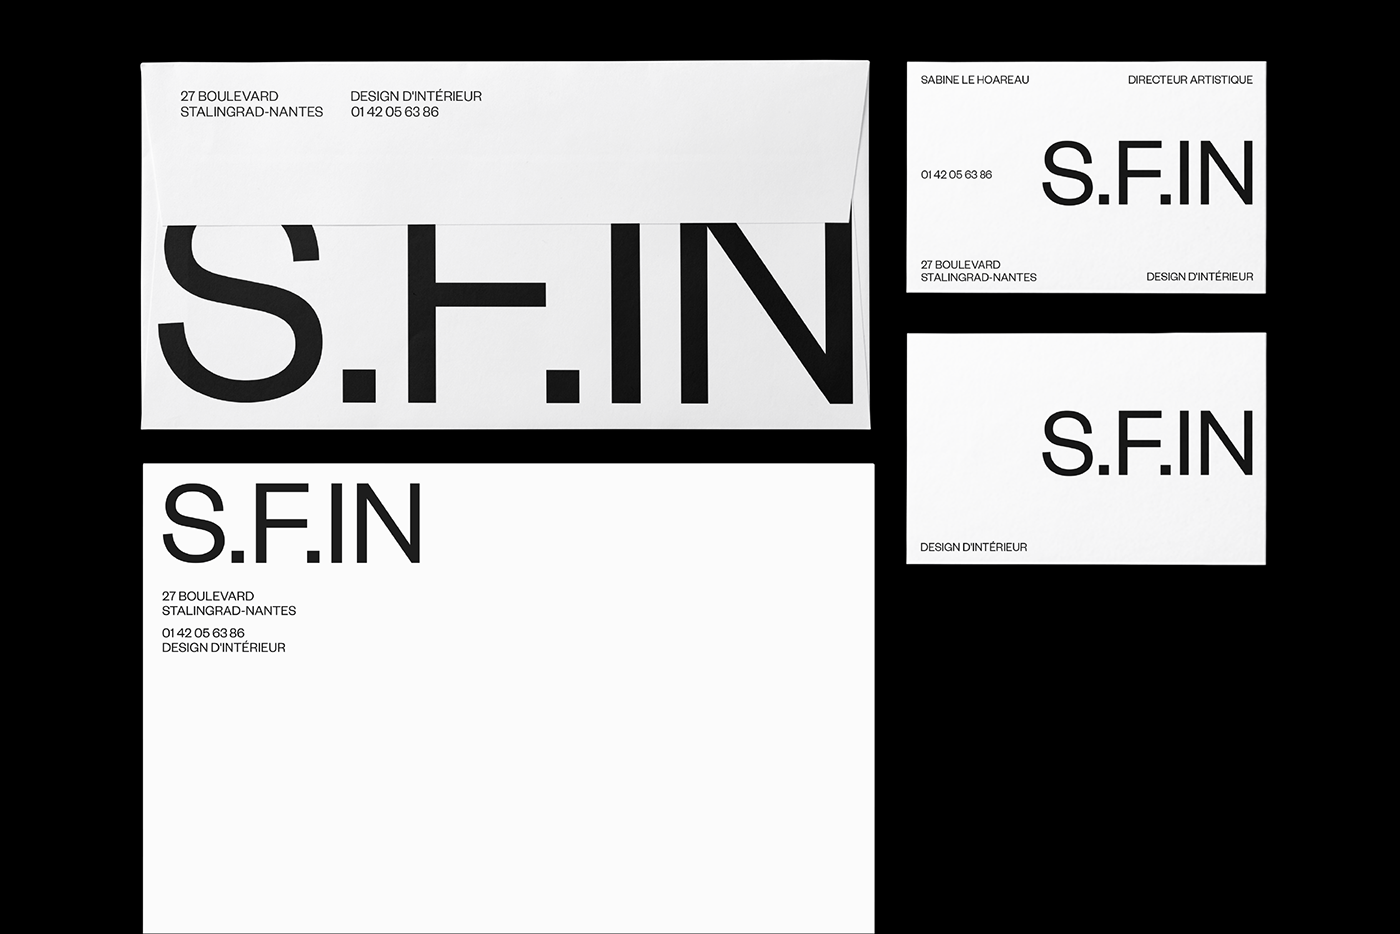 室内设计公司S.F.IN品牌视觉形象